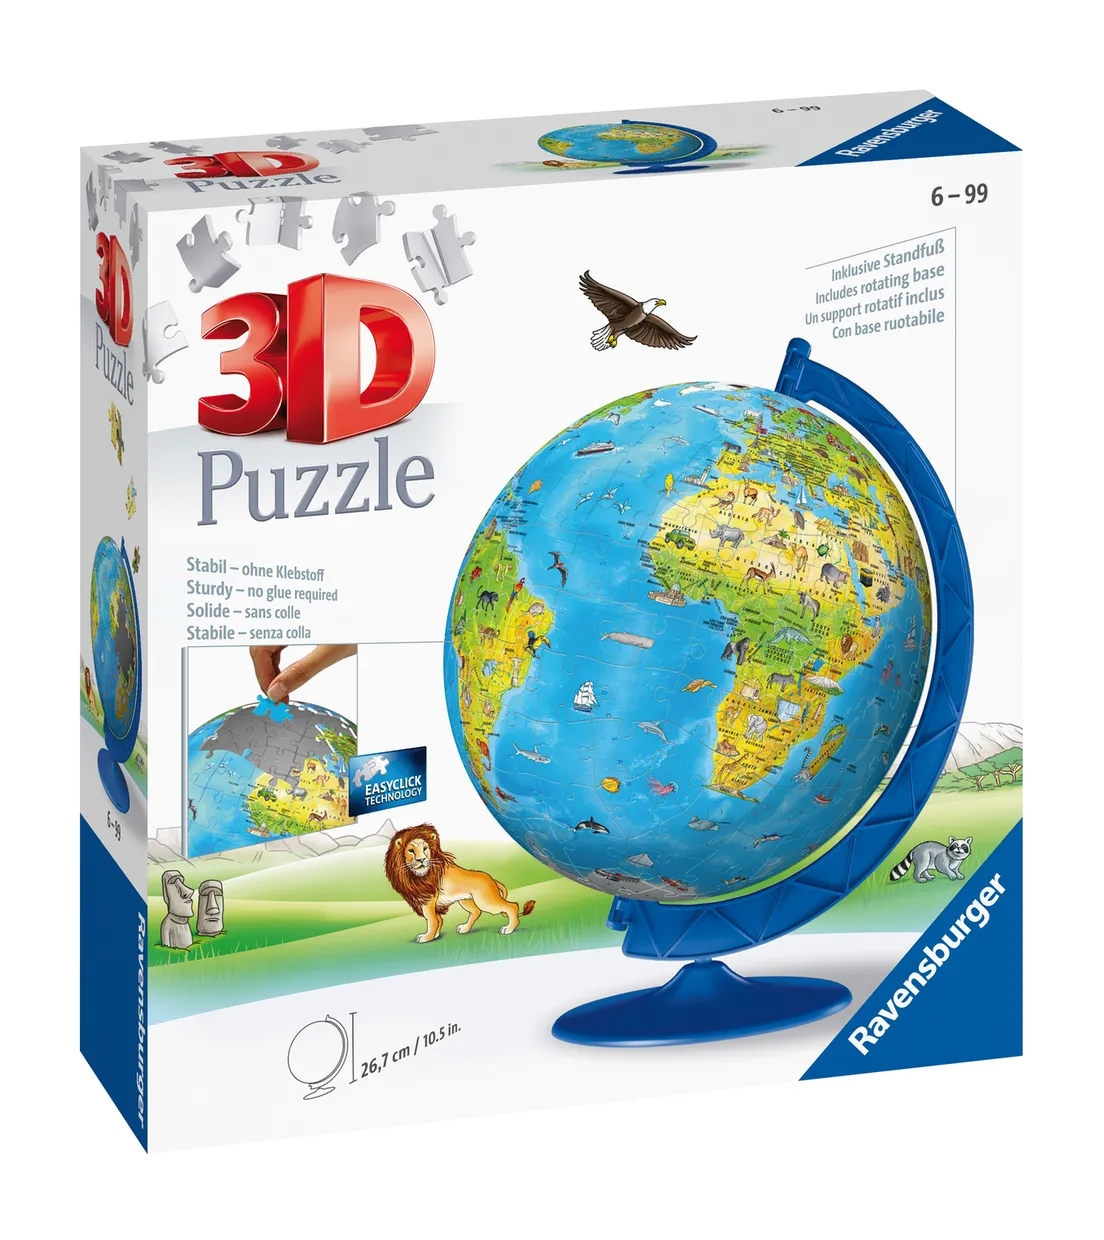 XXL Kinder globe Engels  3D Puzzel  180 stukjes